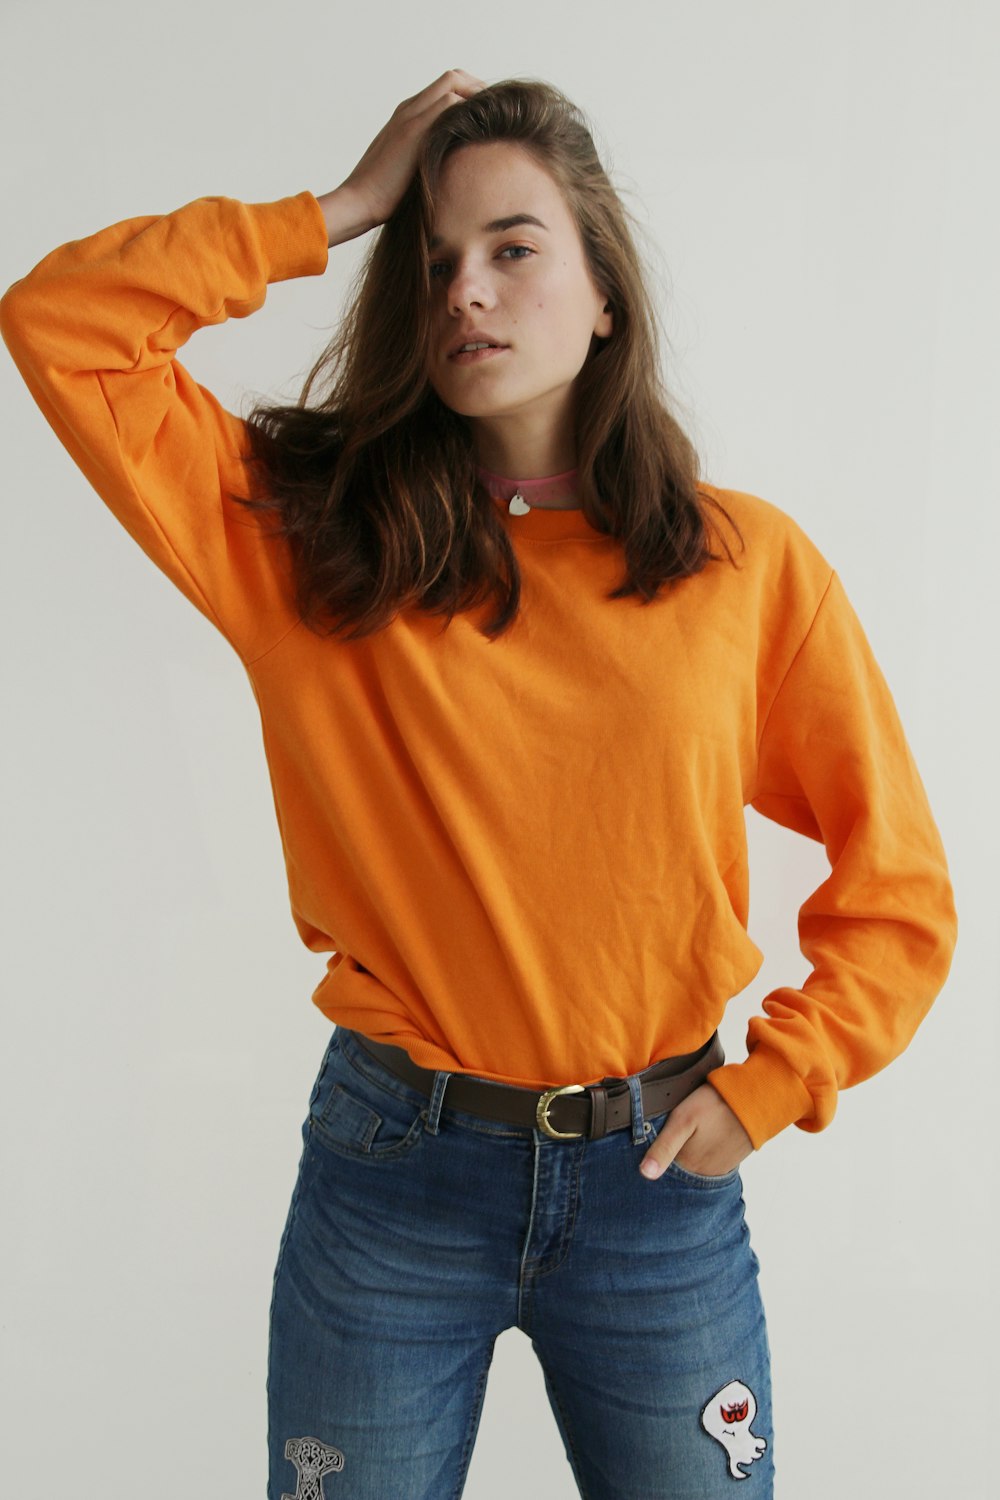 Femme portant un sweat-shirt à col rond orange debout tout en mettant la main droite sur sa tête